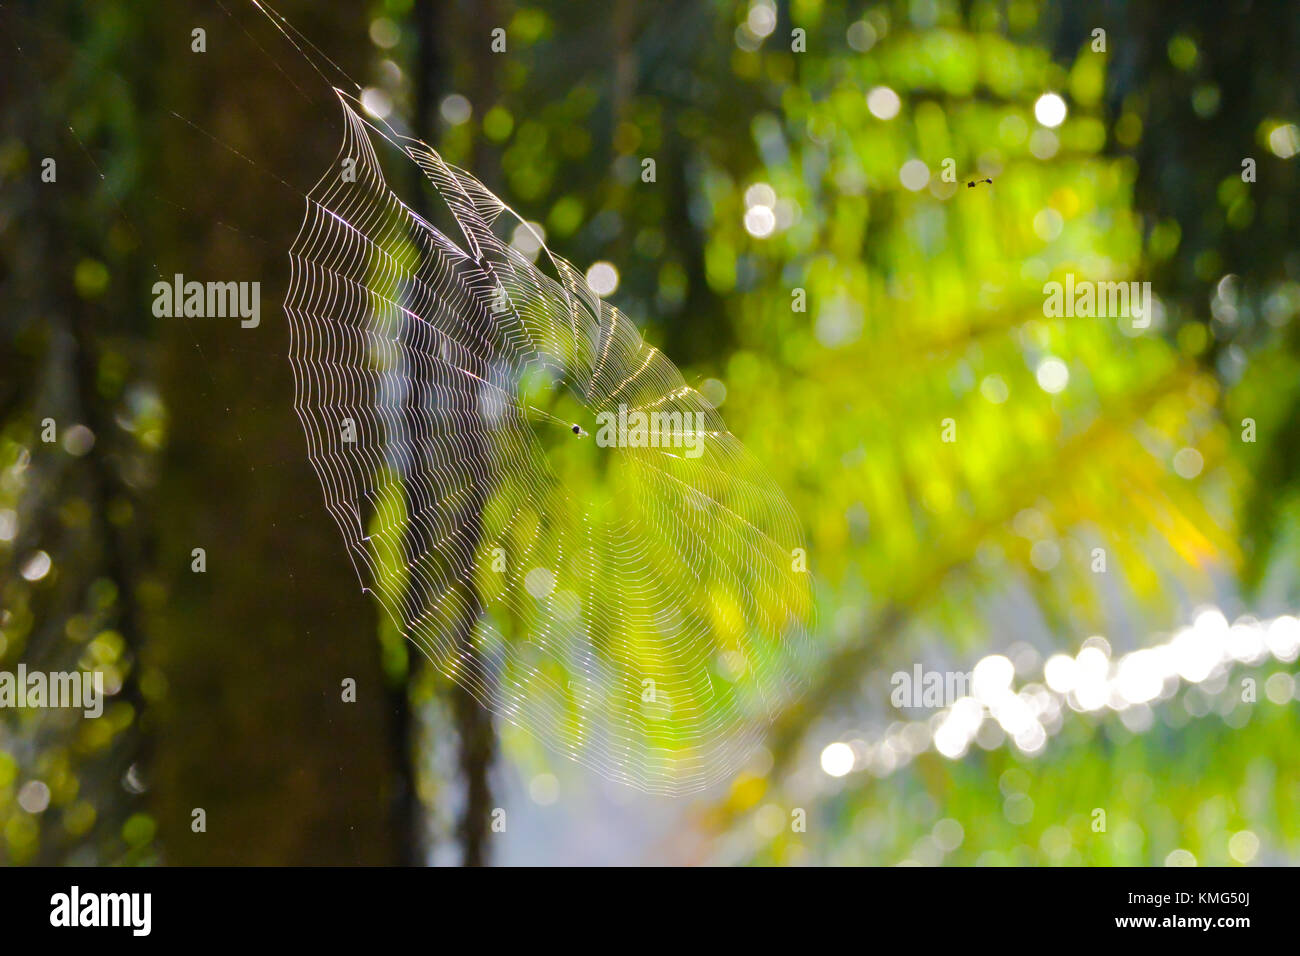 Una tela de araña colgando de la palma de aceite; fotografía tomada en el parque nacional de Khao Sok, Tailandia. Foto de stock